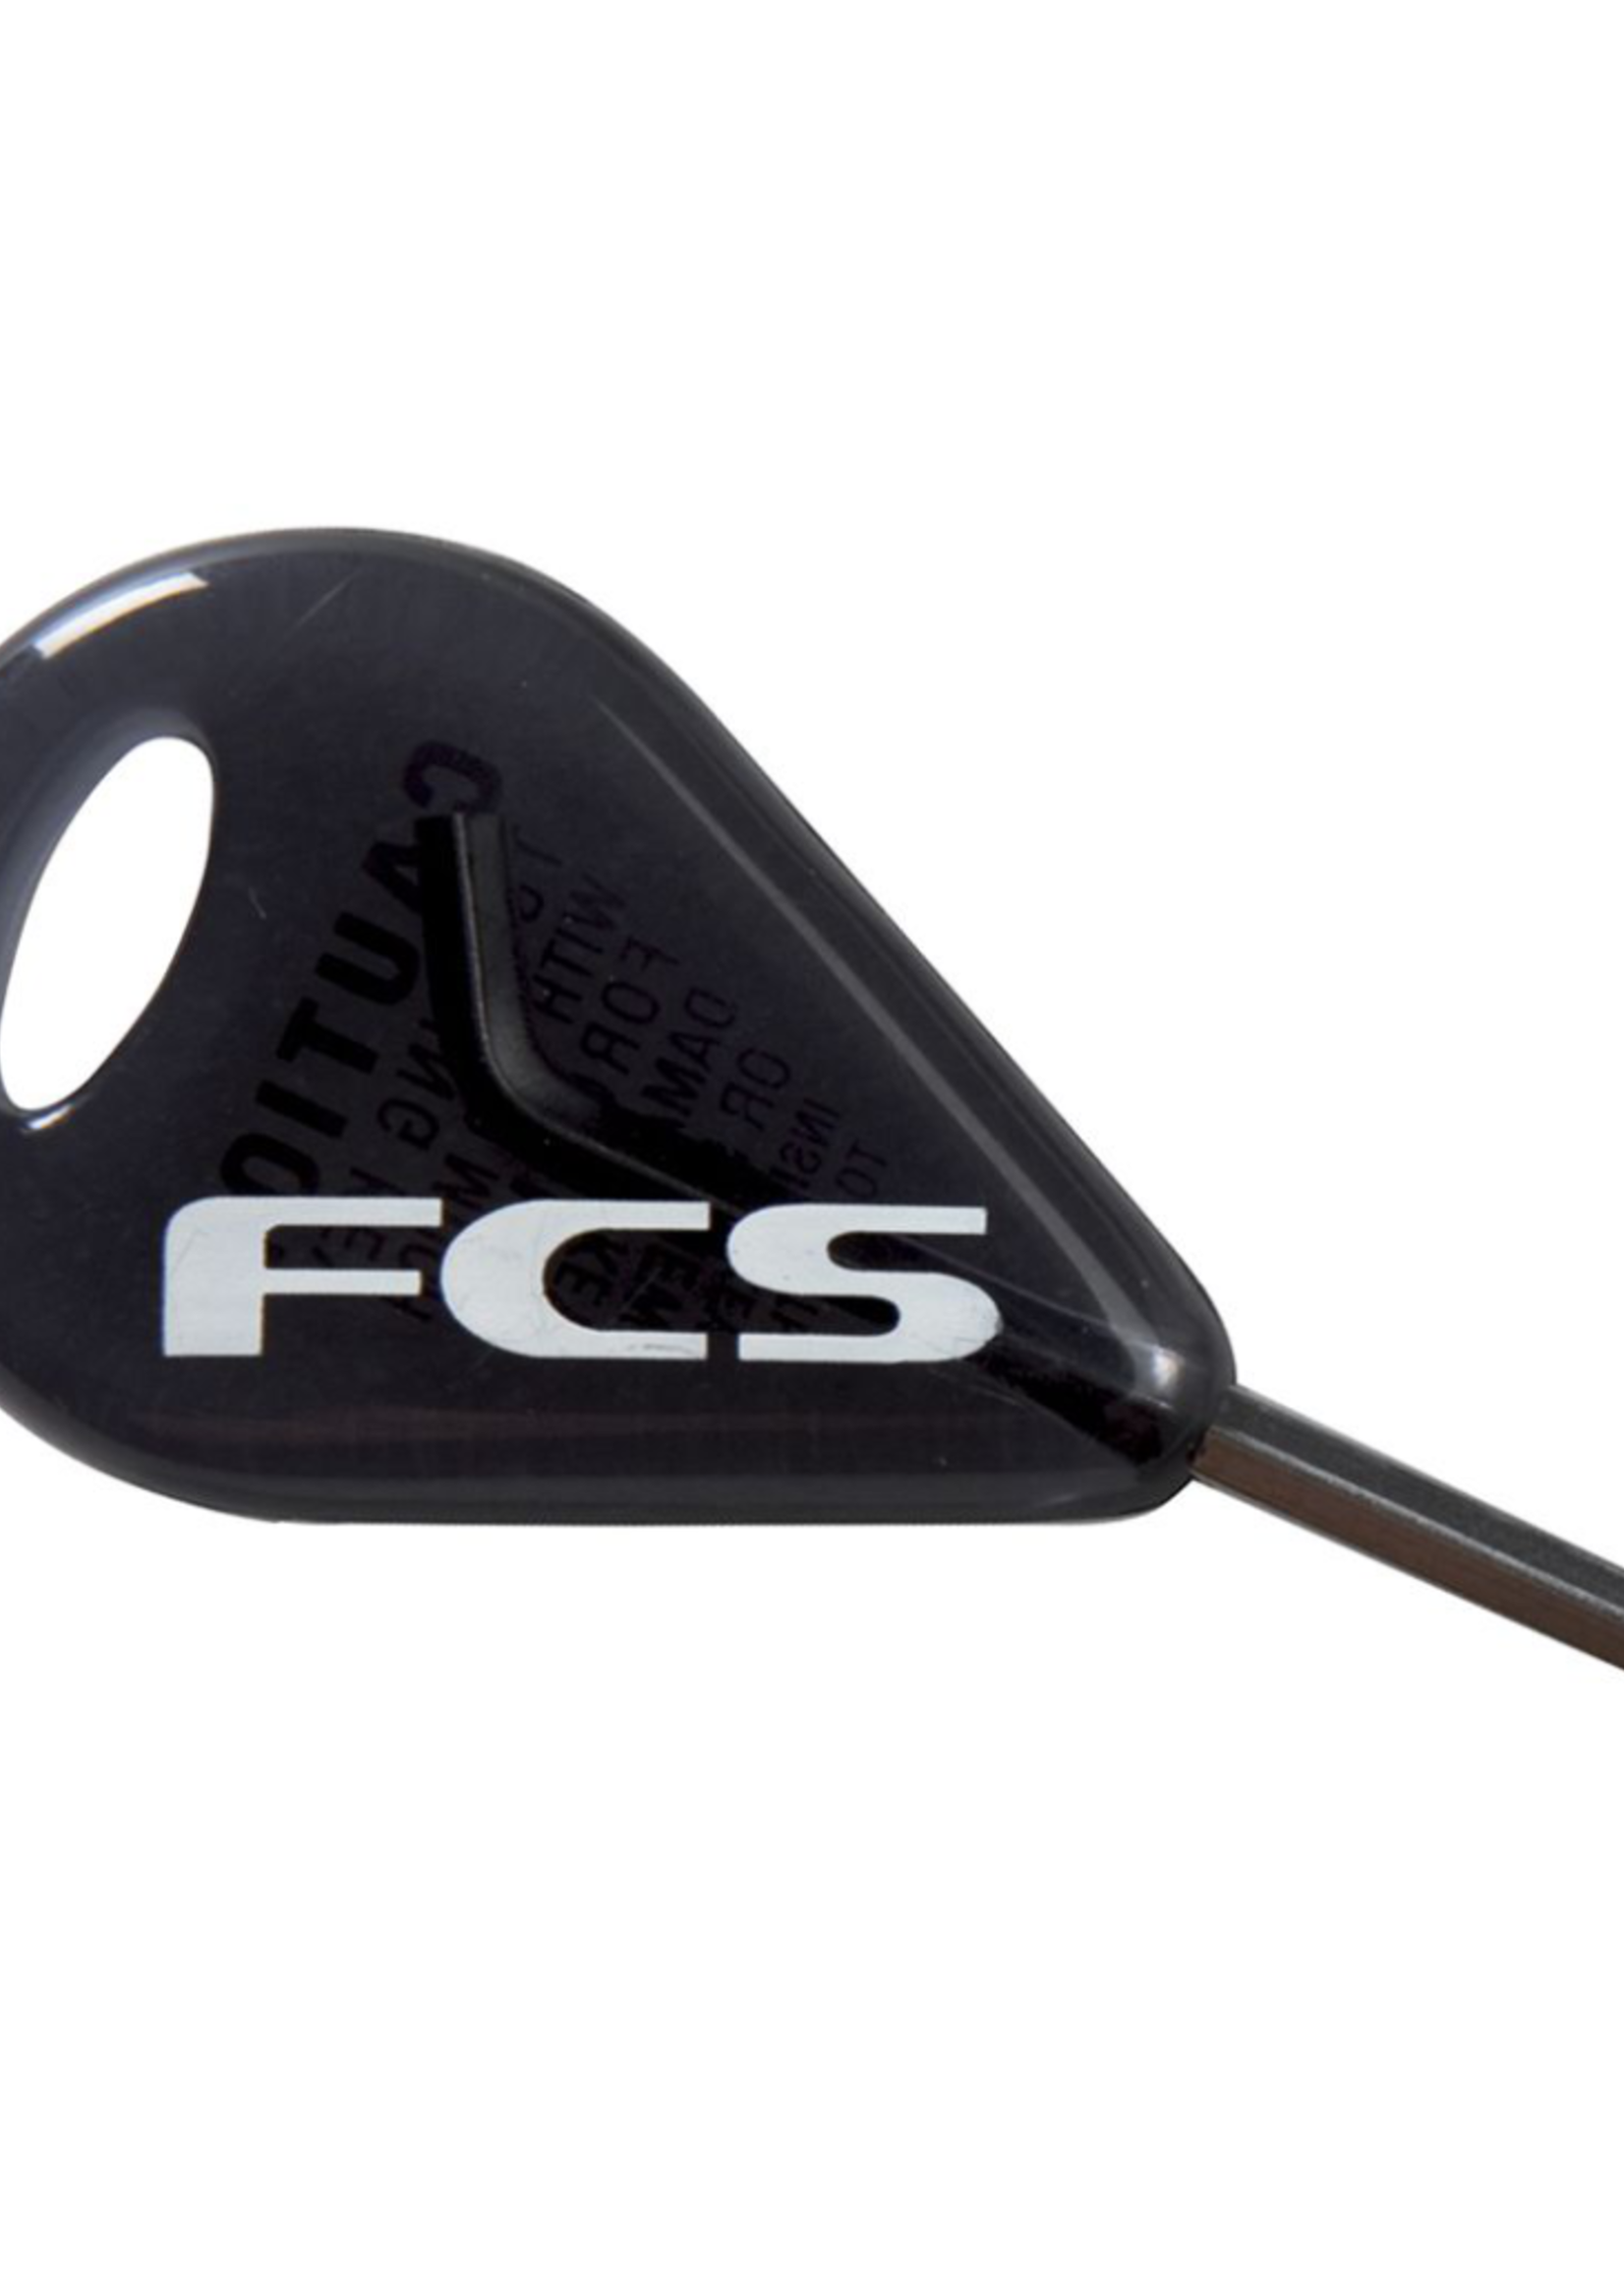 FCS FCS Fin Key